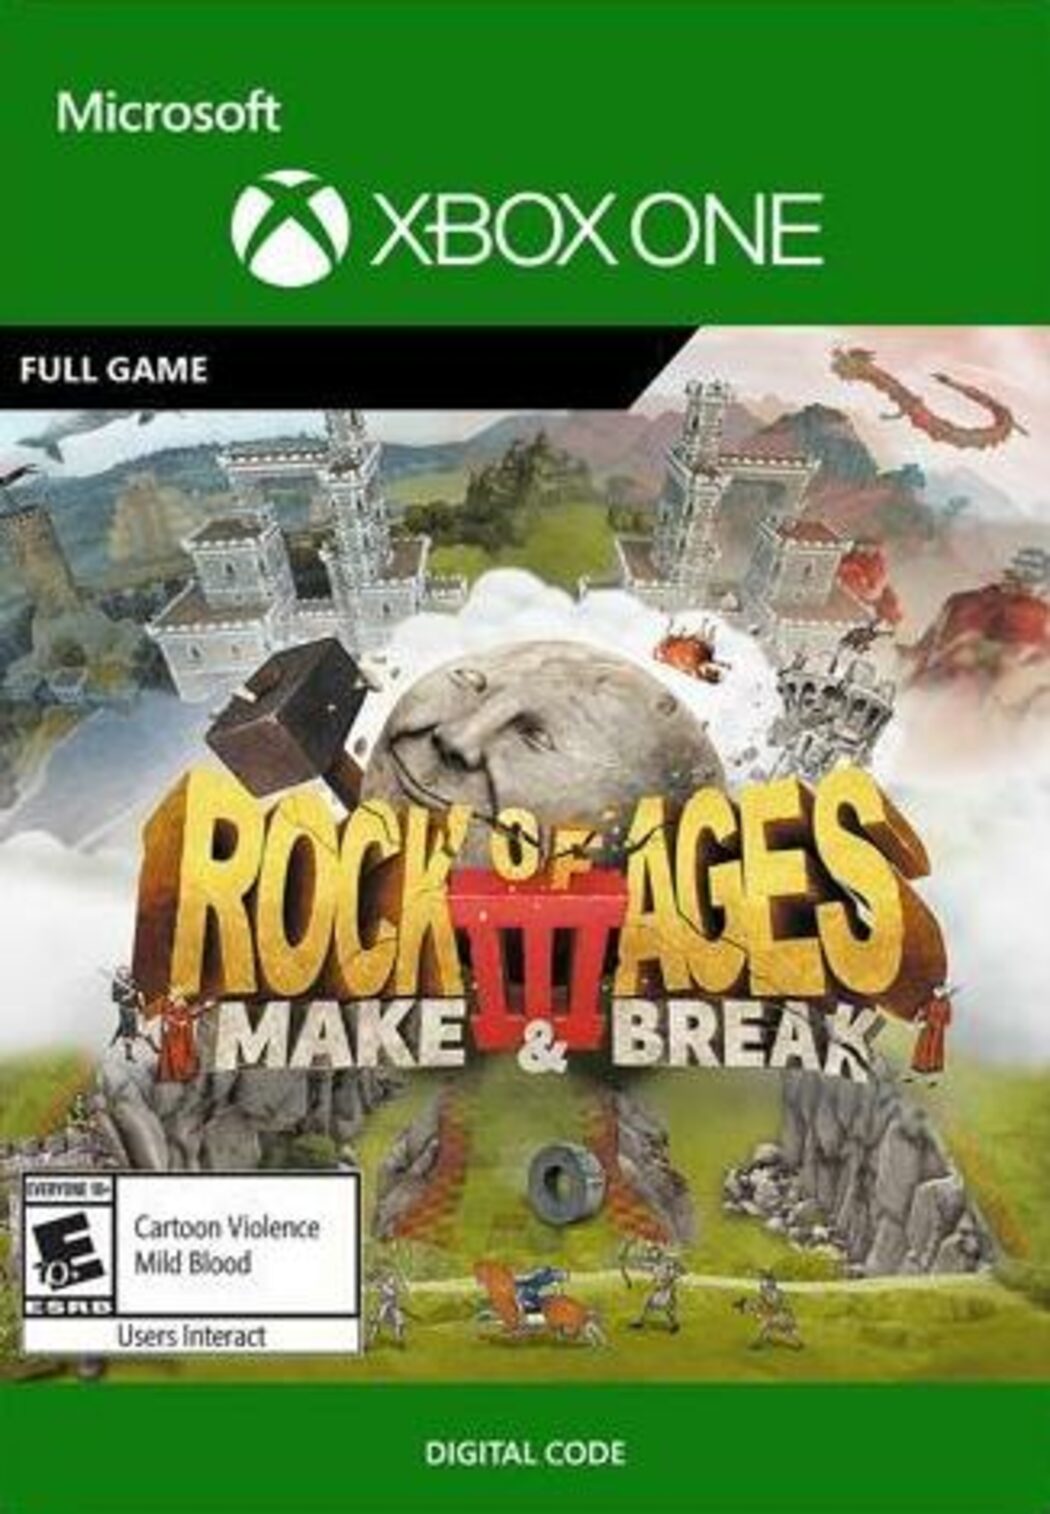 Rock of Ages 3: Make & Break - PS4 - VNS Games - Seu próximo jogo está aqui!